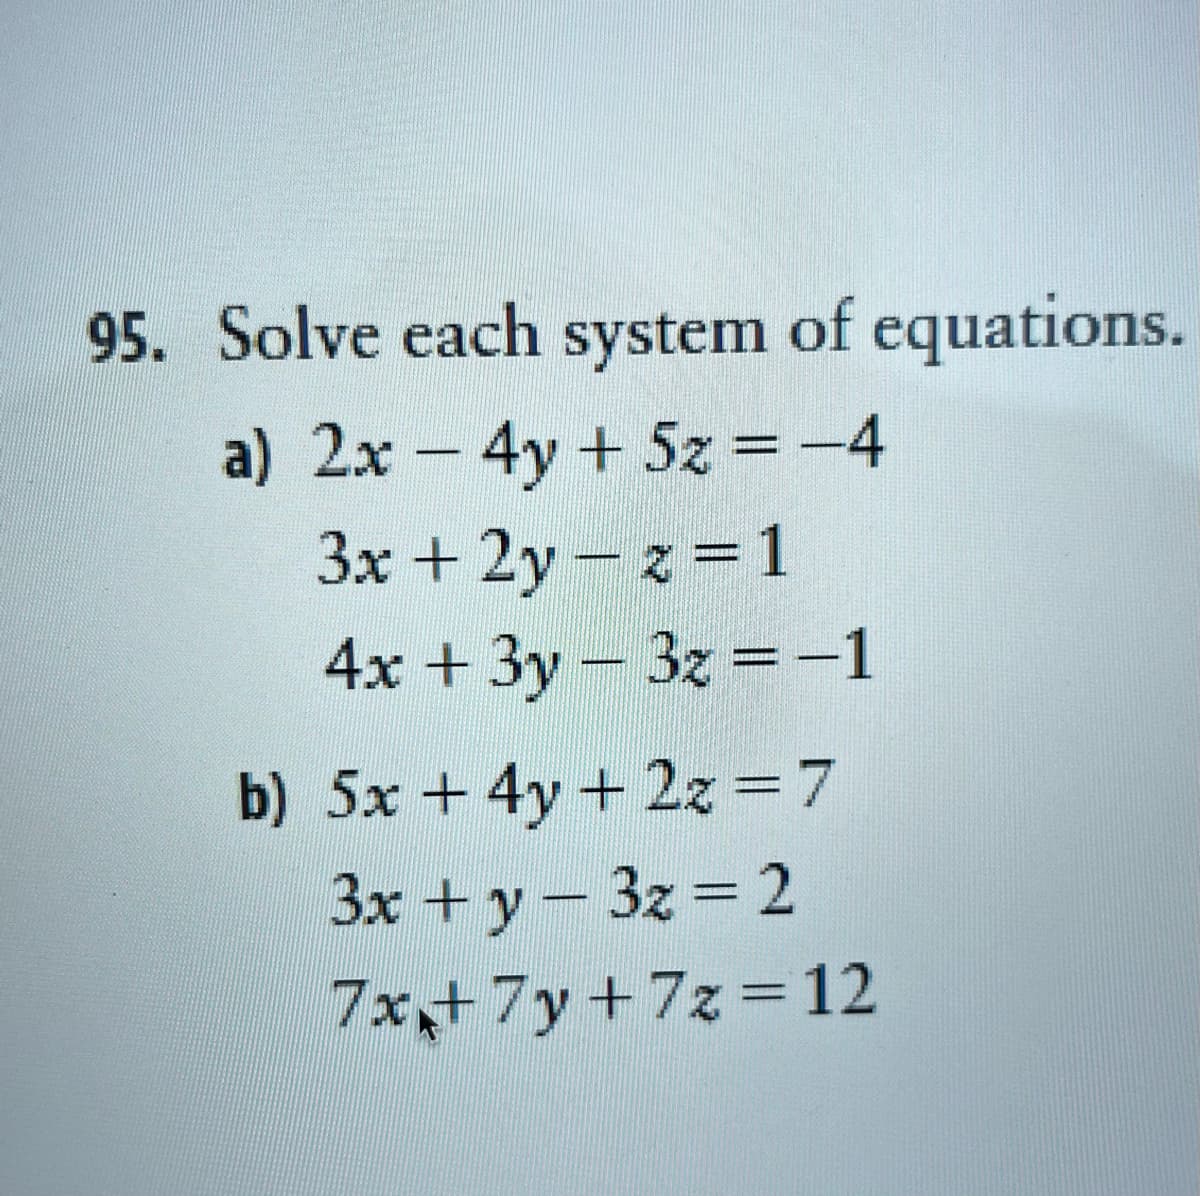 95. Solve each system of equations.
a) 2x - 4y + 5z = −4
3x +2y-z=1
4x + 3y - 3x = -1
b) 5x + 4y + 2z = 7
3x + y - 3x = 2
7x+ 7y+7z = 12